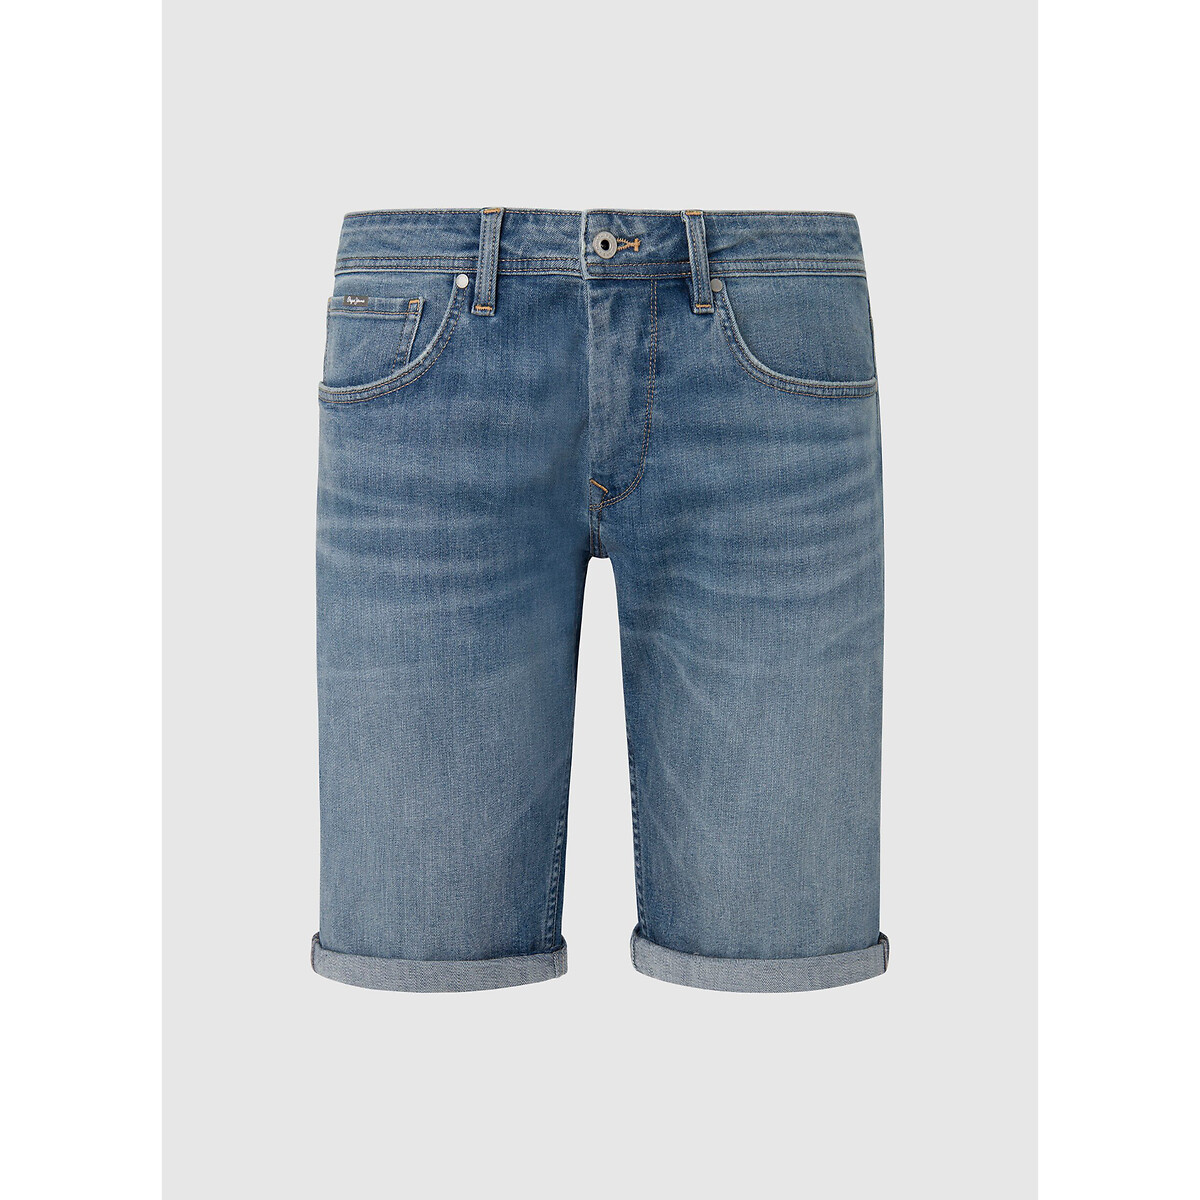 Шорты из джинсовой ткани прямого покроя 28 (US) синий куртка прямого покроя из джинсовой ткани m синий